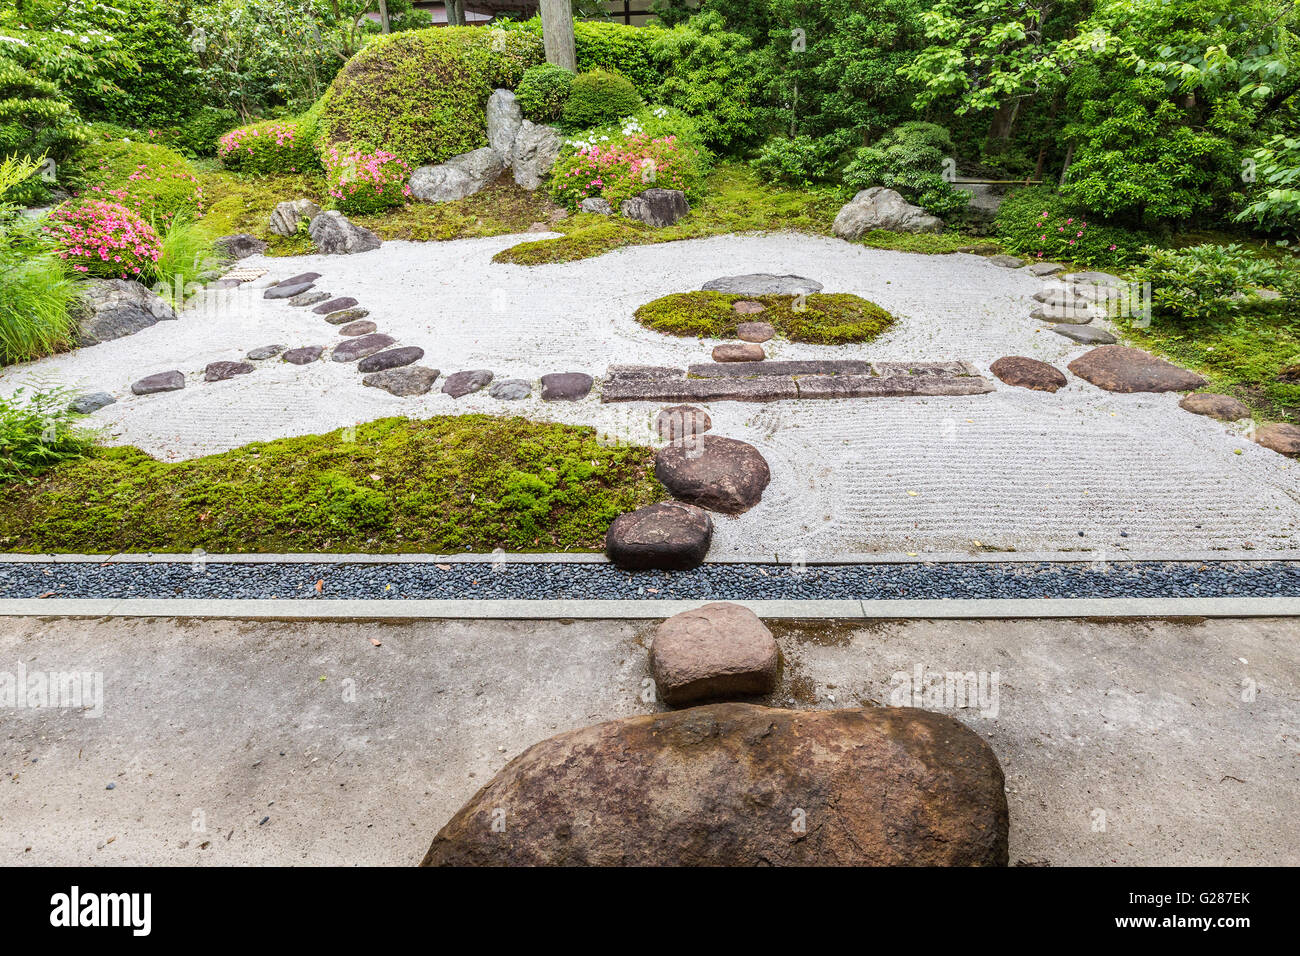 Jomyoji Tempel Kamakura hat einen restaurierten Teehaus Kisen-ein Besucher den Blick auf den Zen-Garten Karesansui genießen Stockfoto